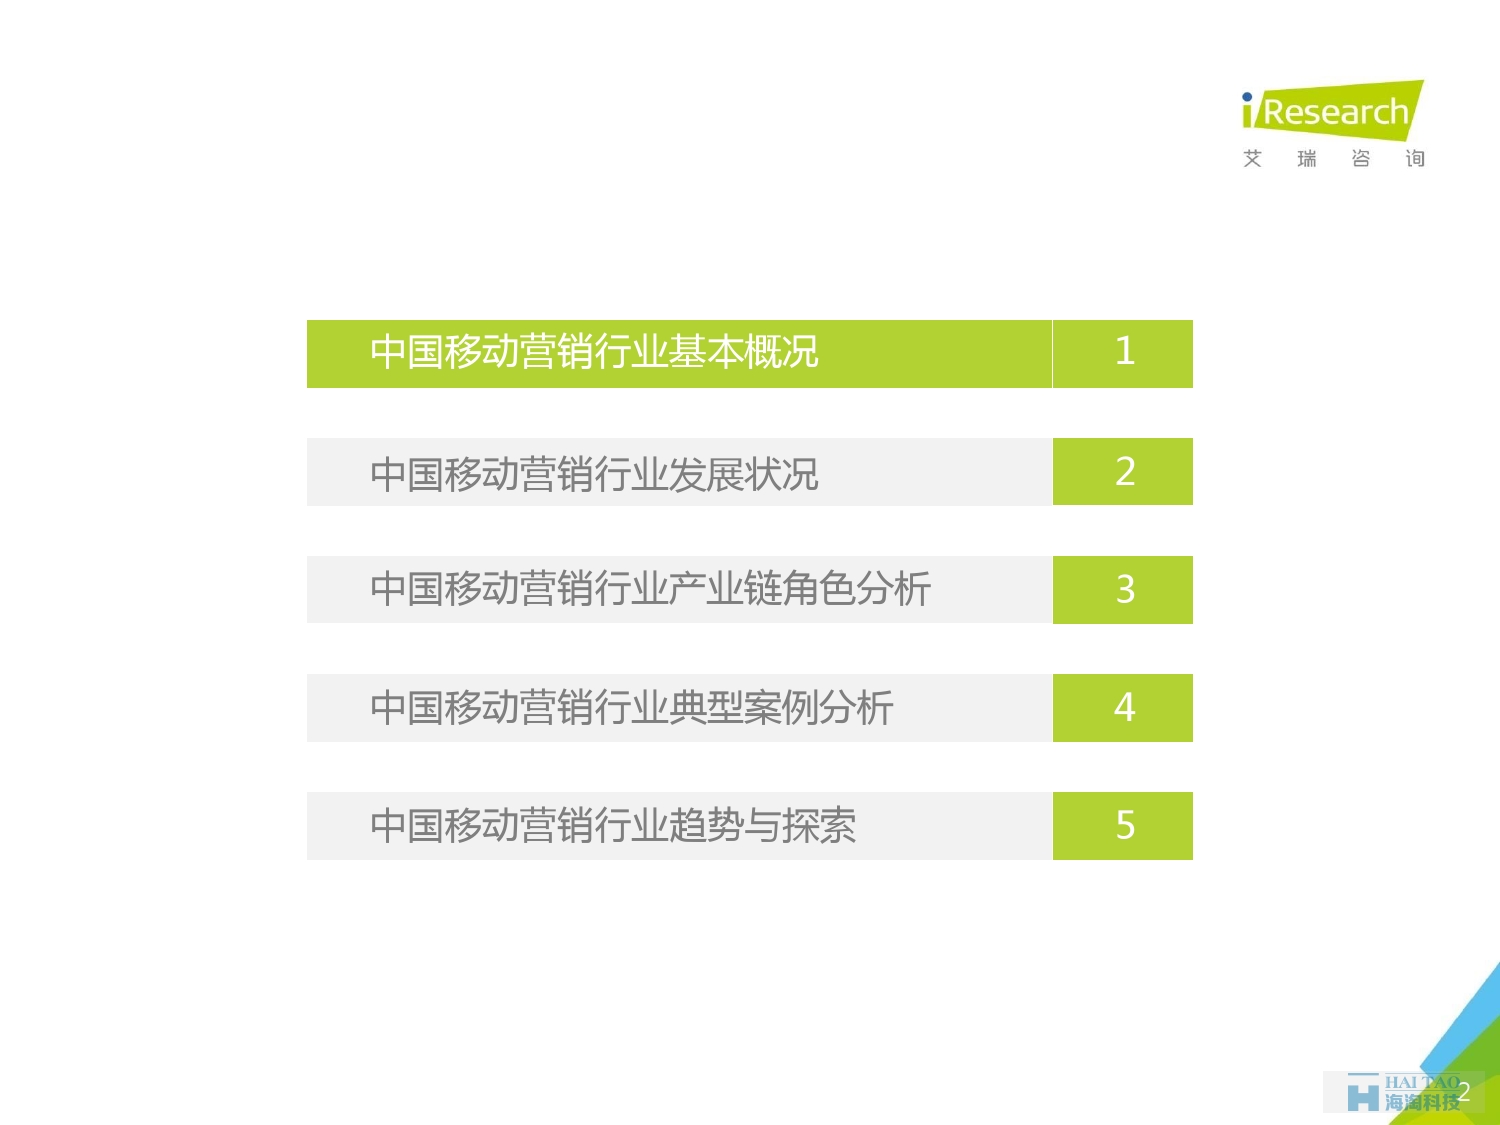 2016年中国移动营销行业研究报告——程序化时代篇_000002